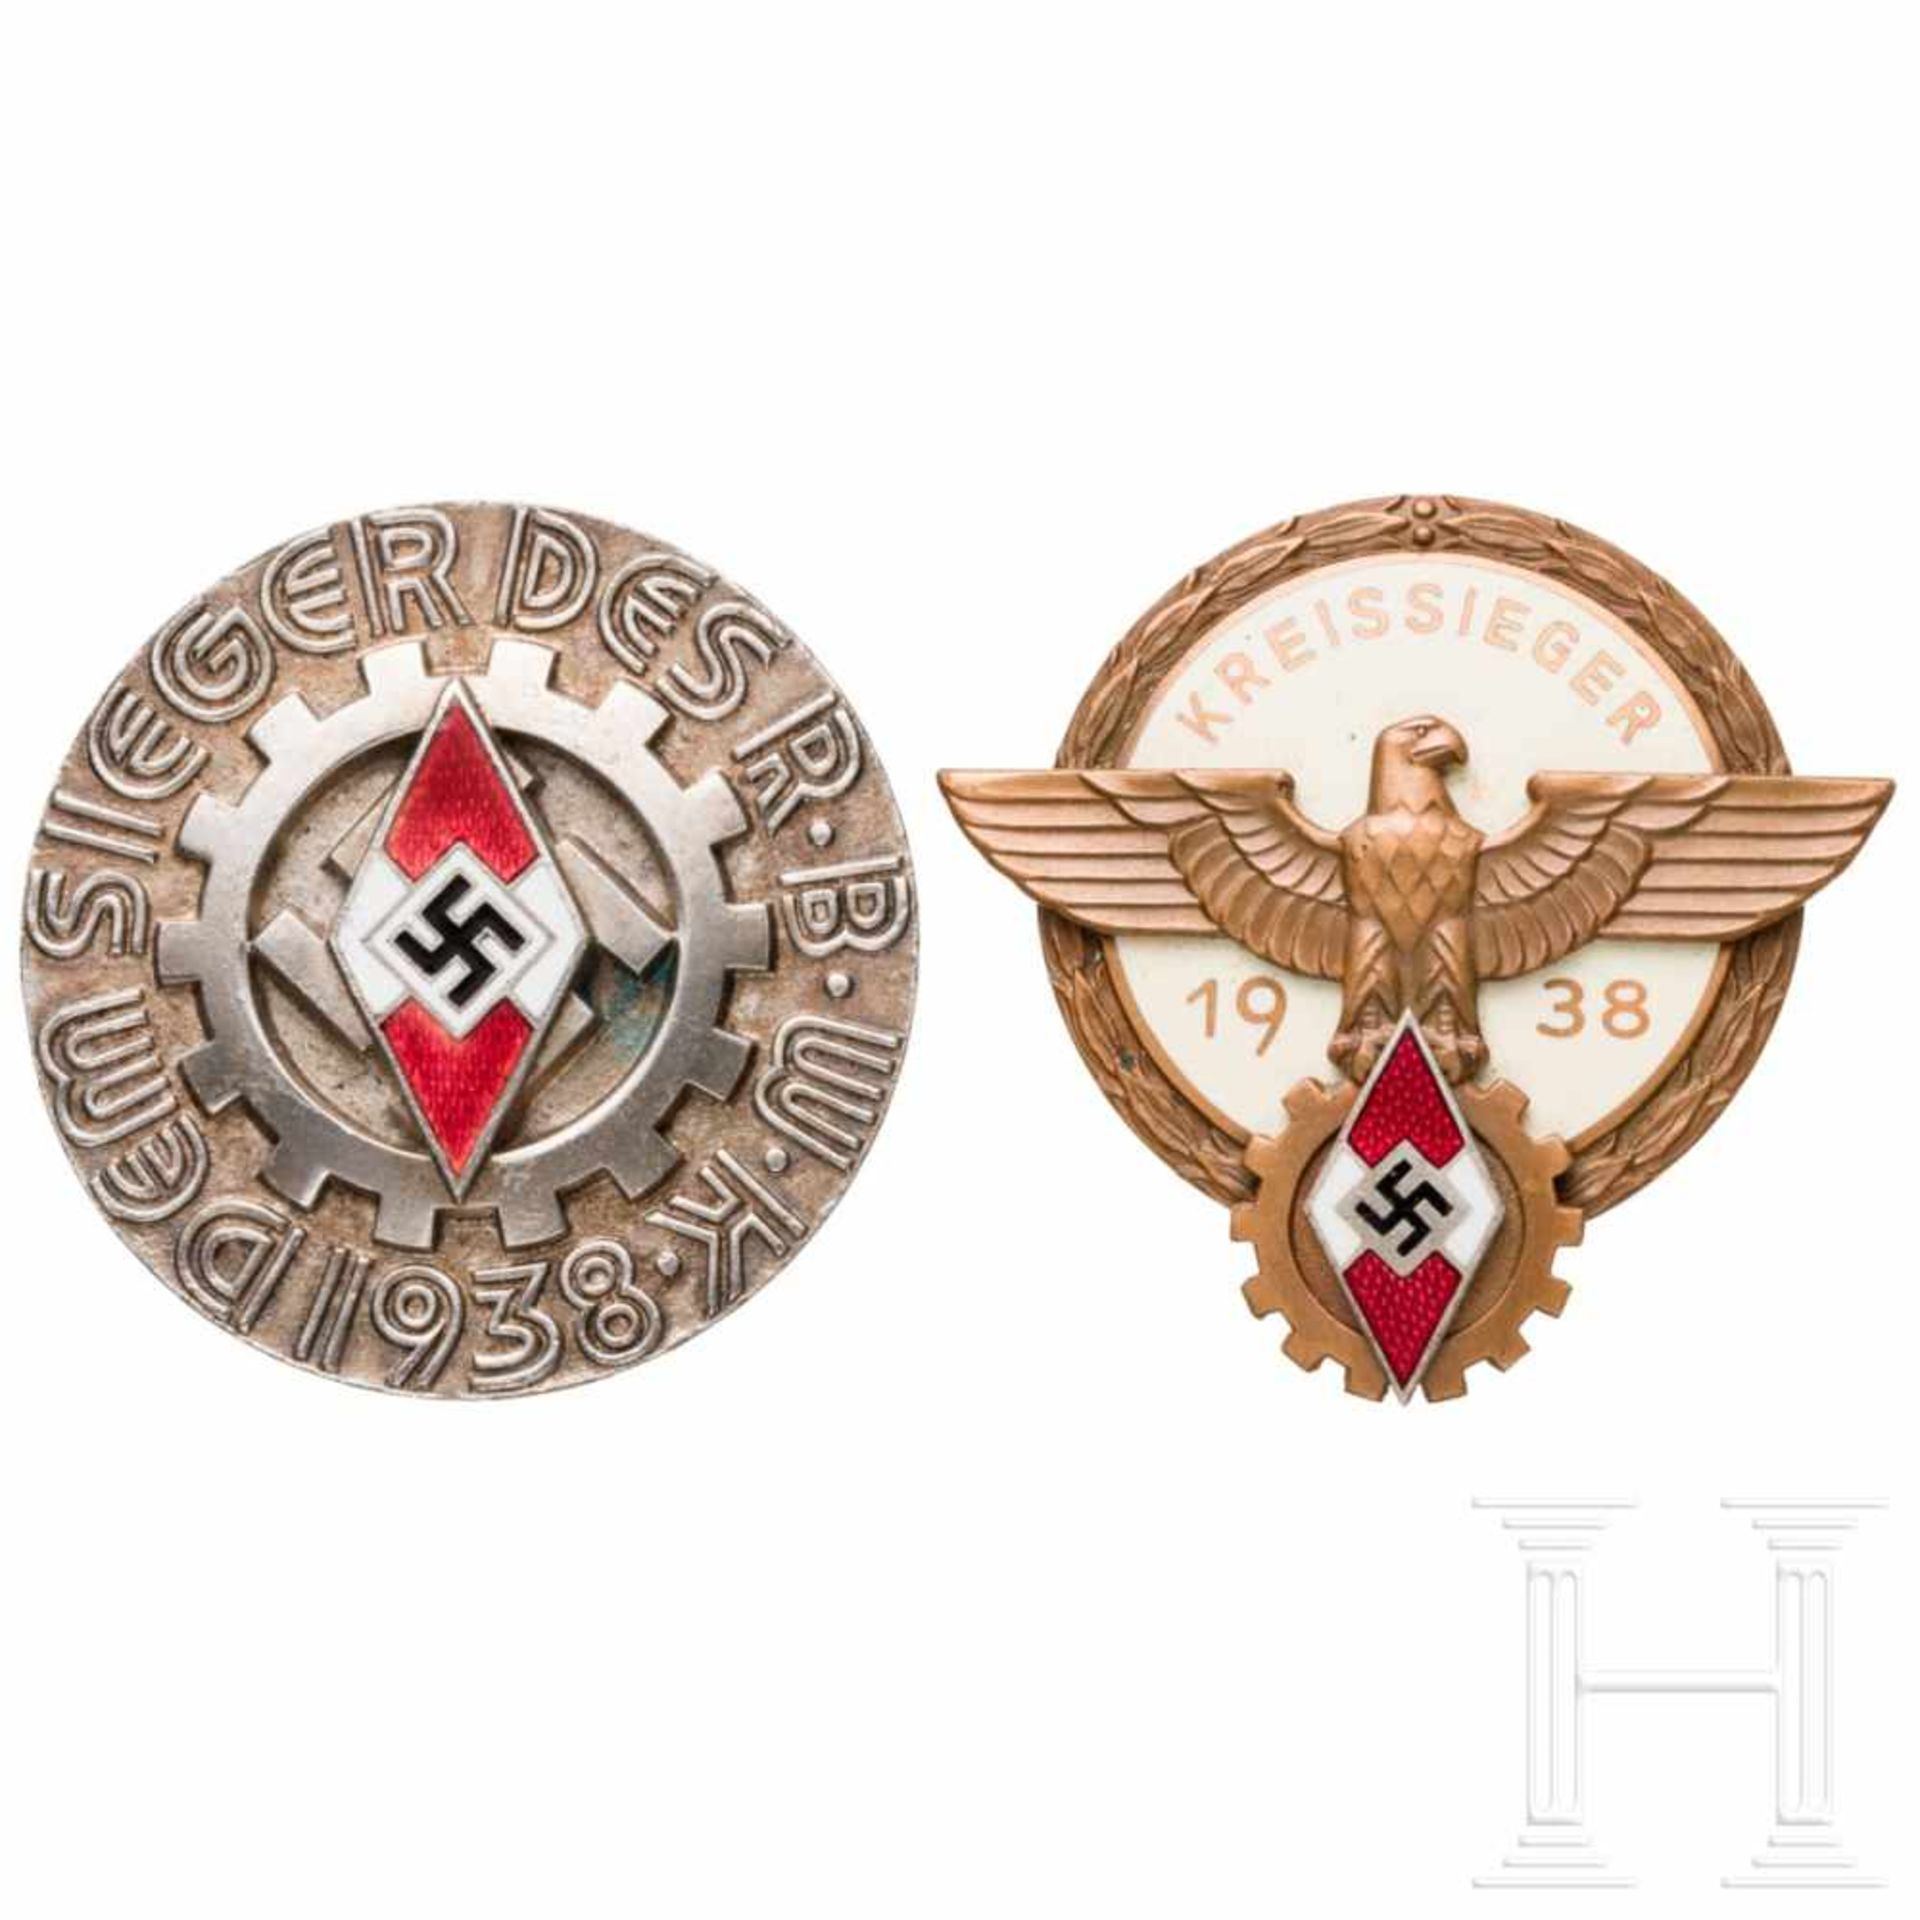 Kreissiegerabzeichen im Reichsberufswettkampf 1938